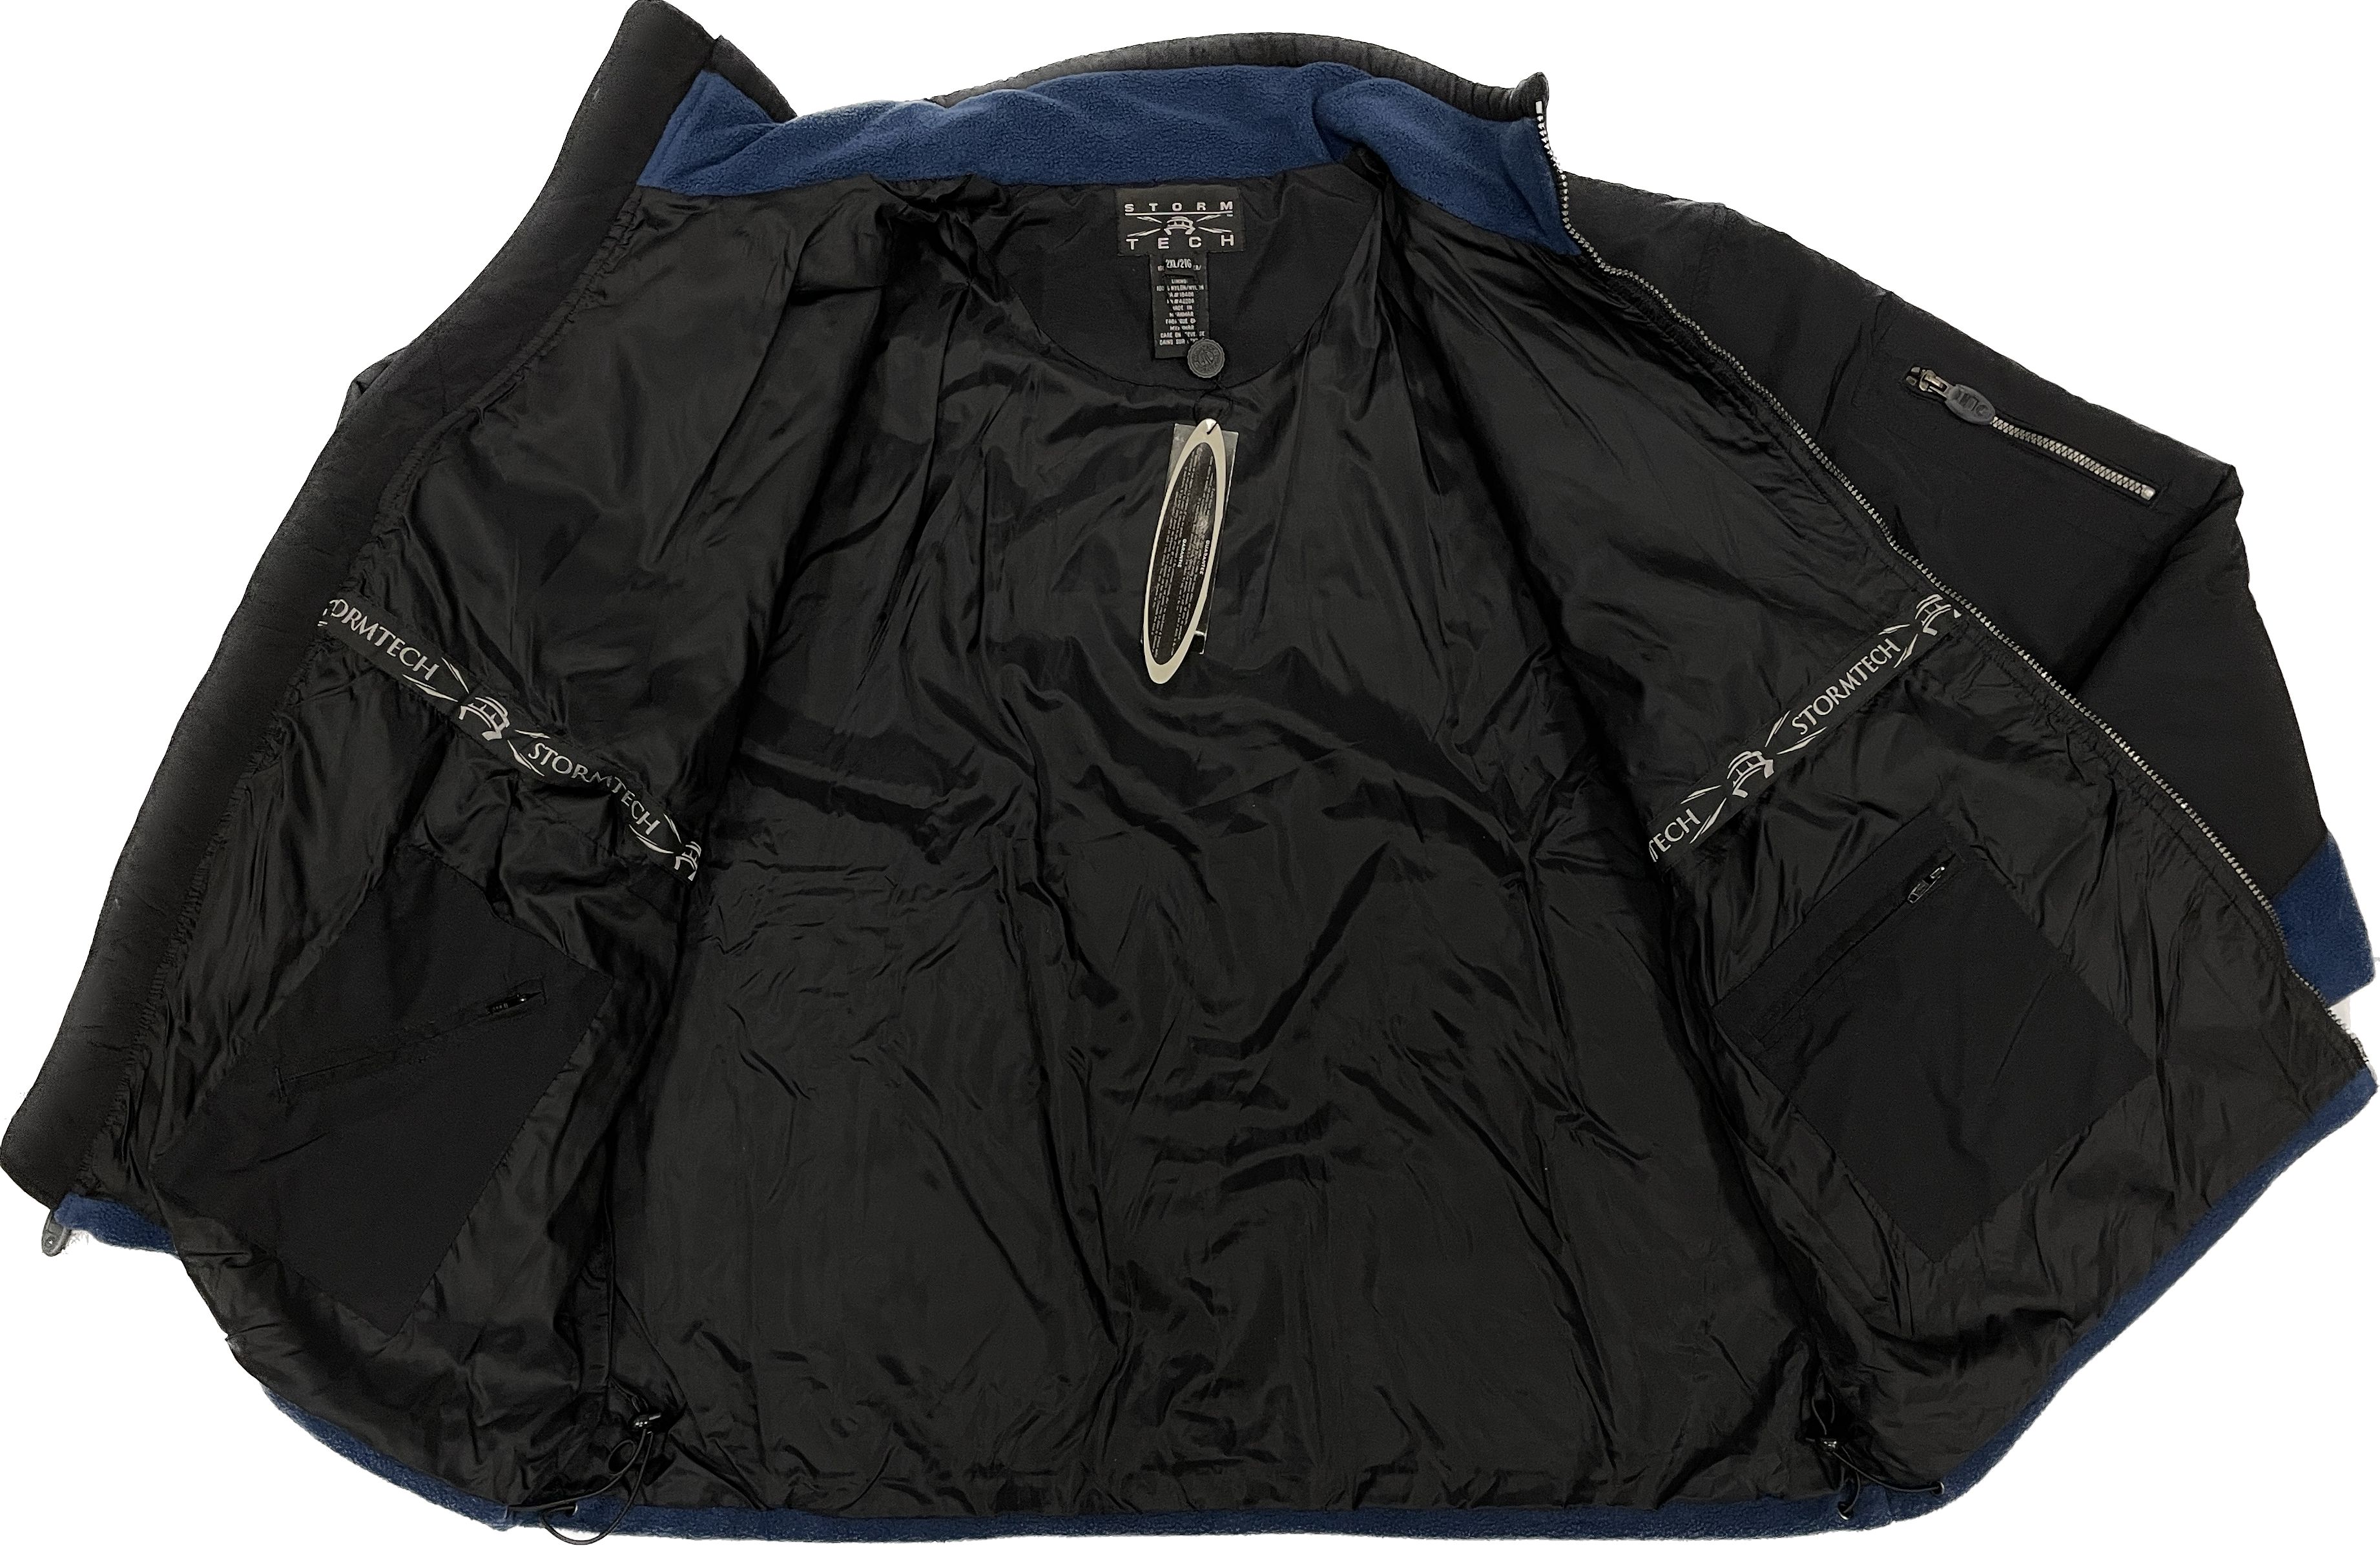 Stormtech Warm Fleece Jacket - Navy & Black